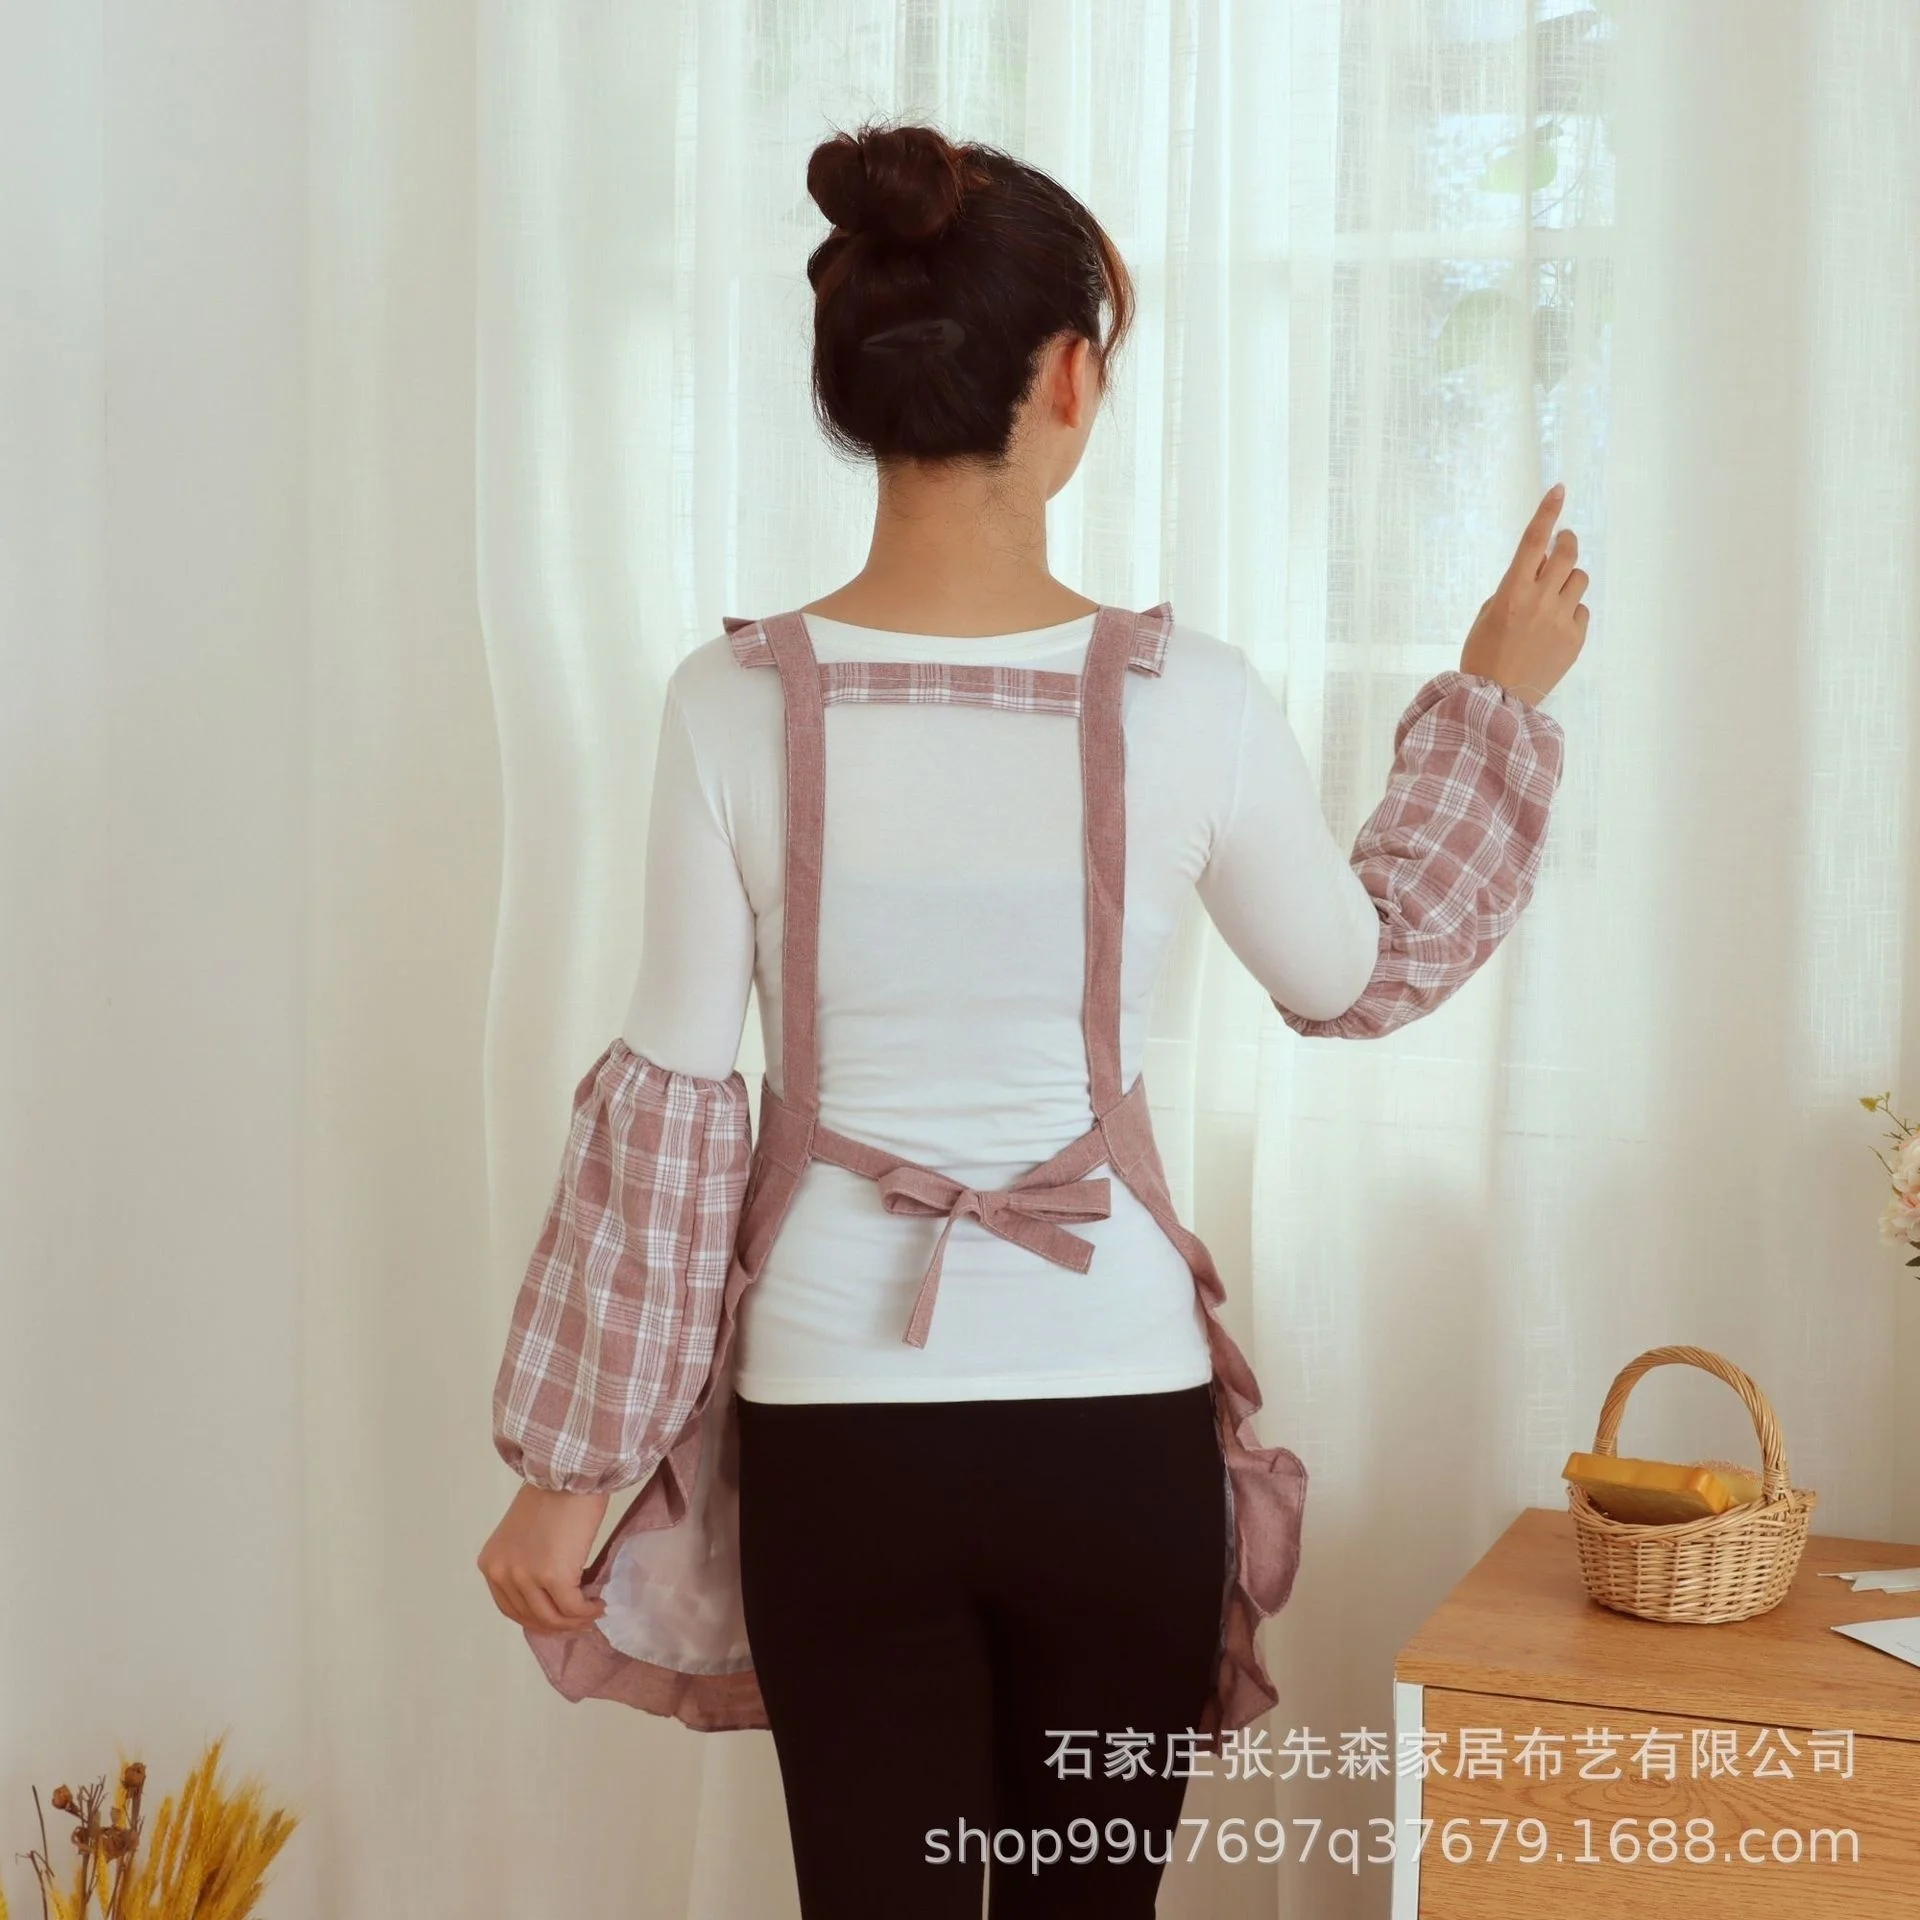 Тканевый фартук для домашней кухни 2021 Новая Корейская мода, Домашний рабочий фартук, Дышащий фартук, юбка для приготовления пищи 4